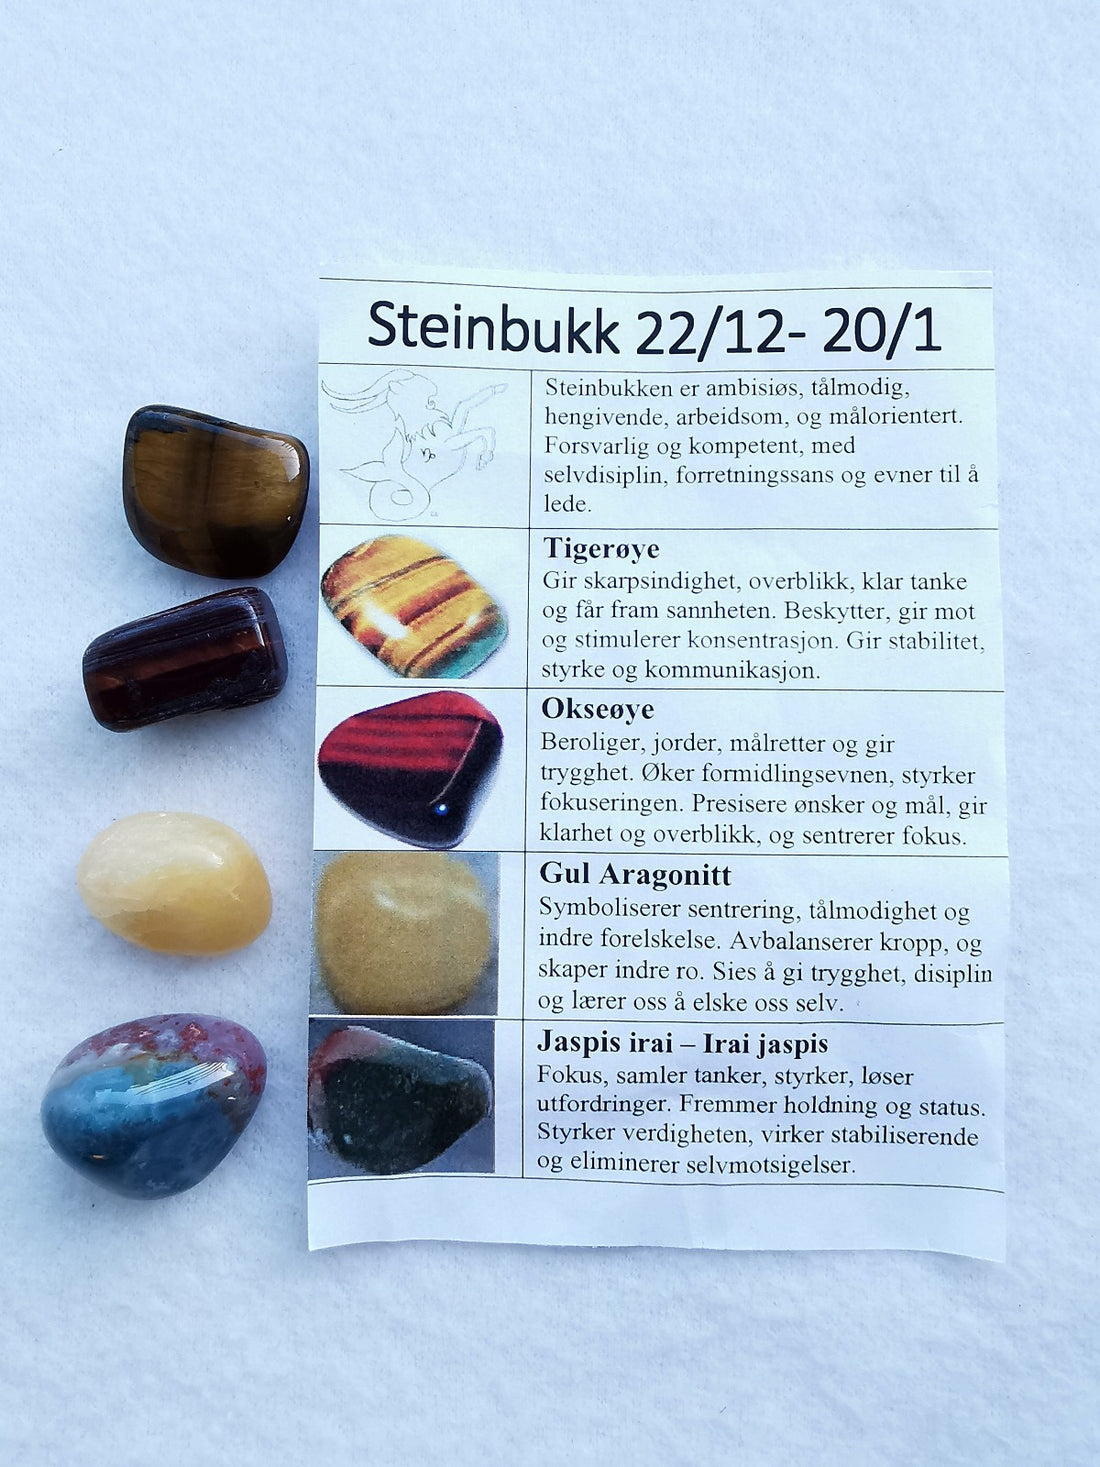 Stjernetegnsett med tromlet stein - Steinbukk 22/12 - 20/1